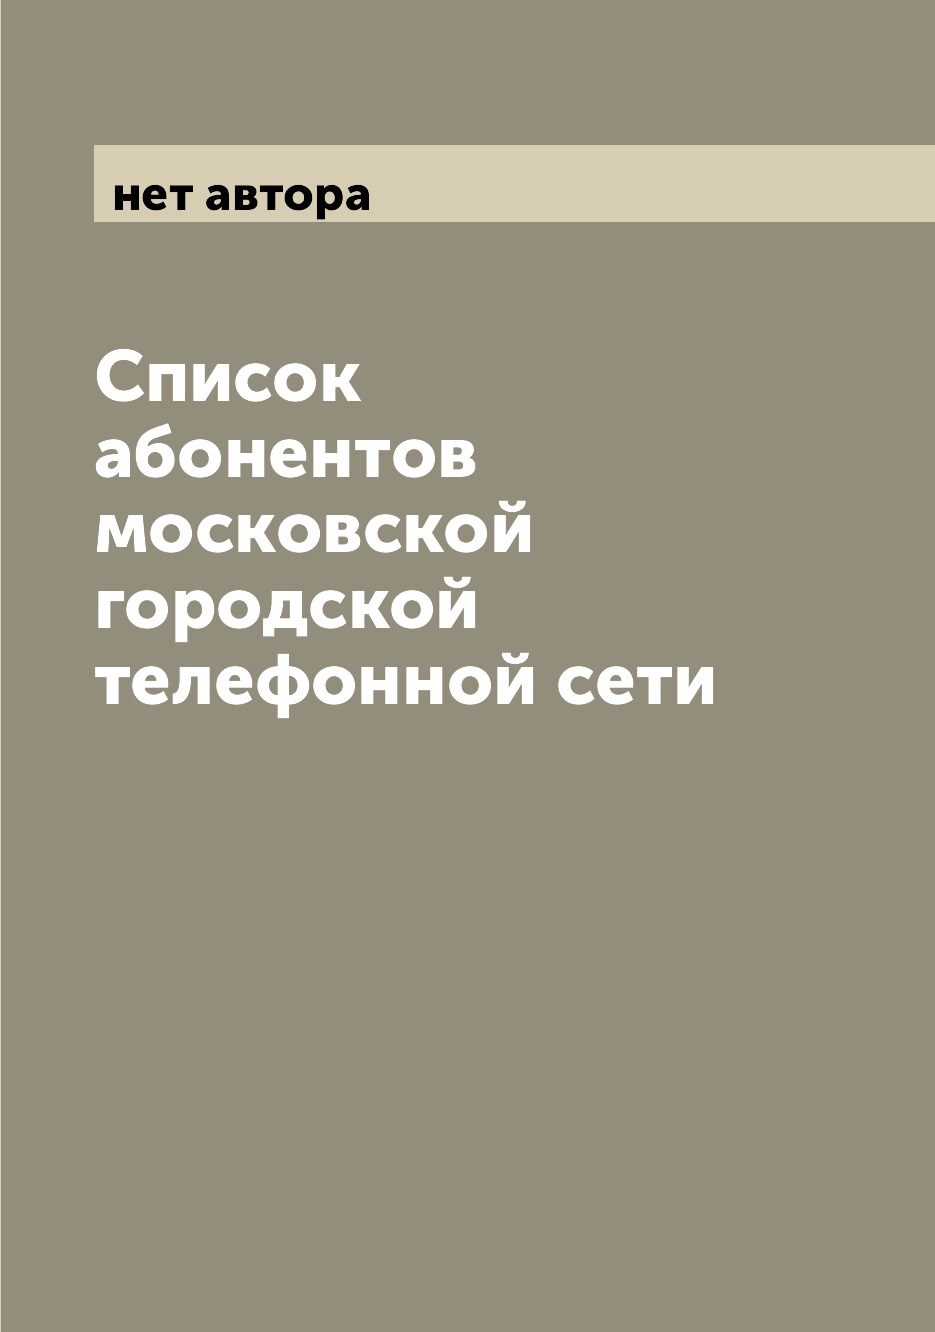 фото Книга список абонентов московской городской телефонной сети archive publica